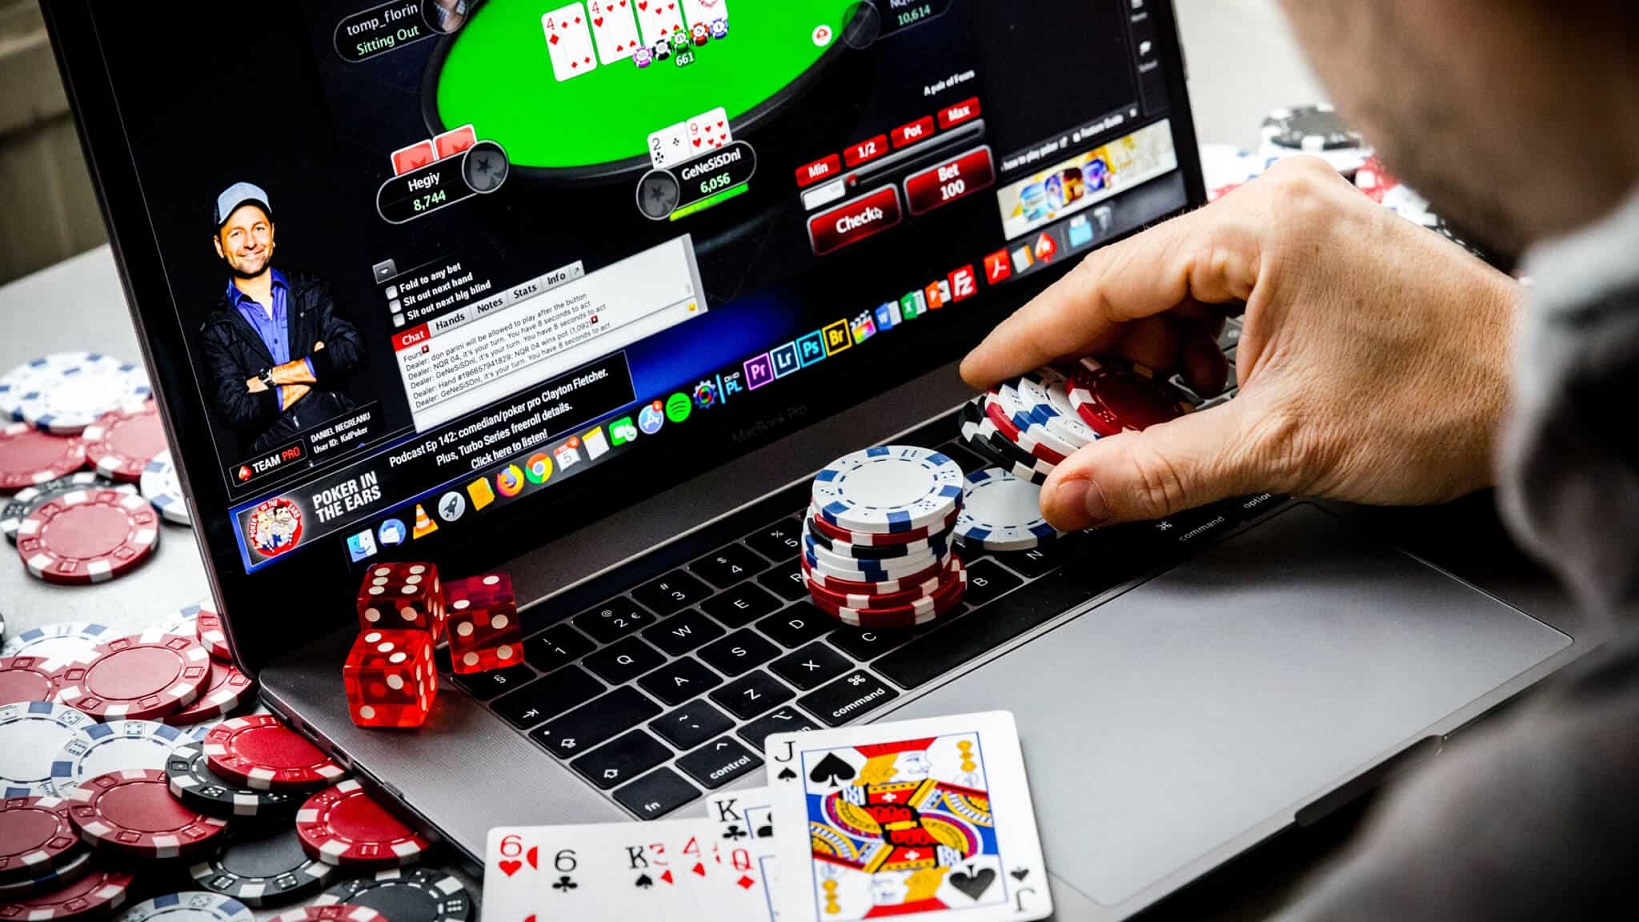 Winnipoker: The Premier Platform for Online Poker